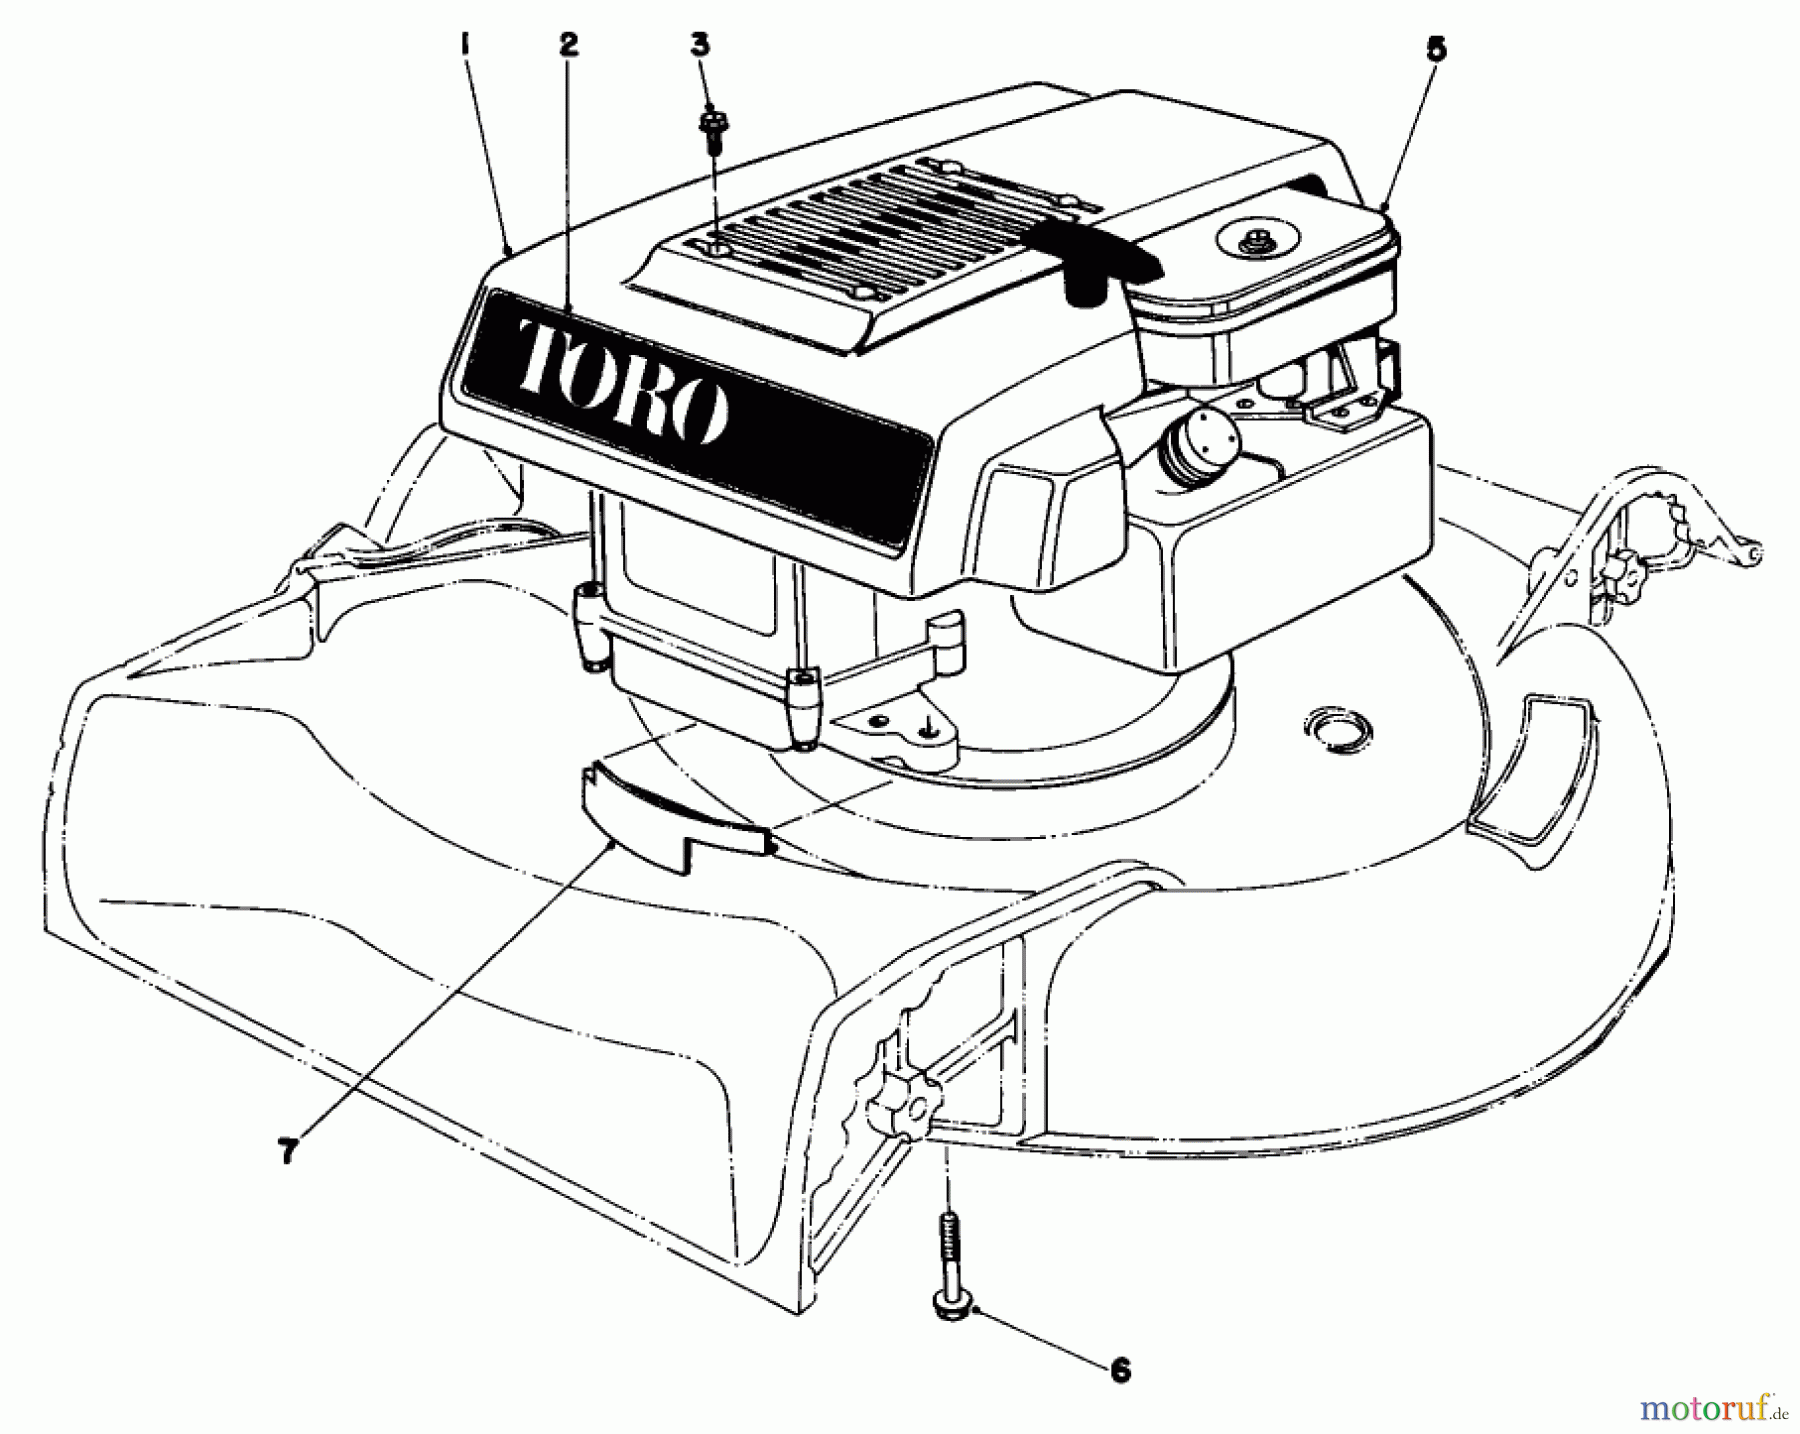  Toro Neu Mowers, Walk-Behind Seite 1 16277 - Toro Whirlwind Lawnmower, 1979 (9000001-9999999) ENGINE ASSEMBLY MODEL 16009 AND 16113